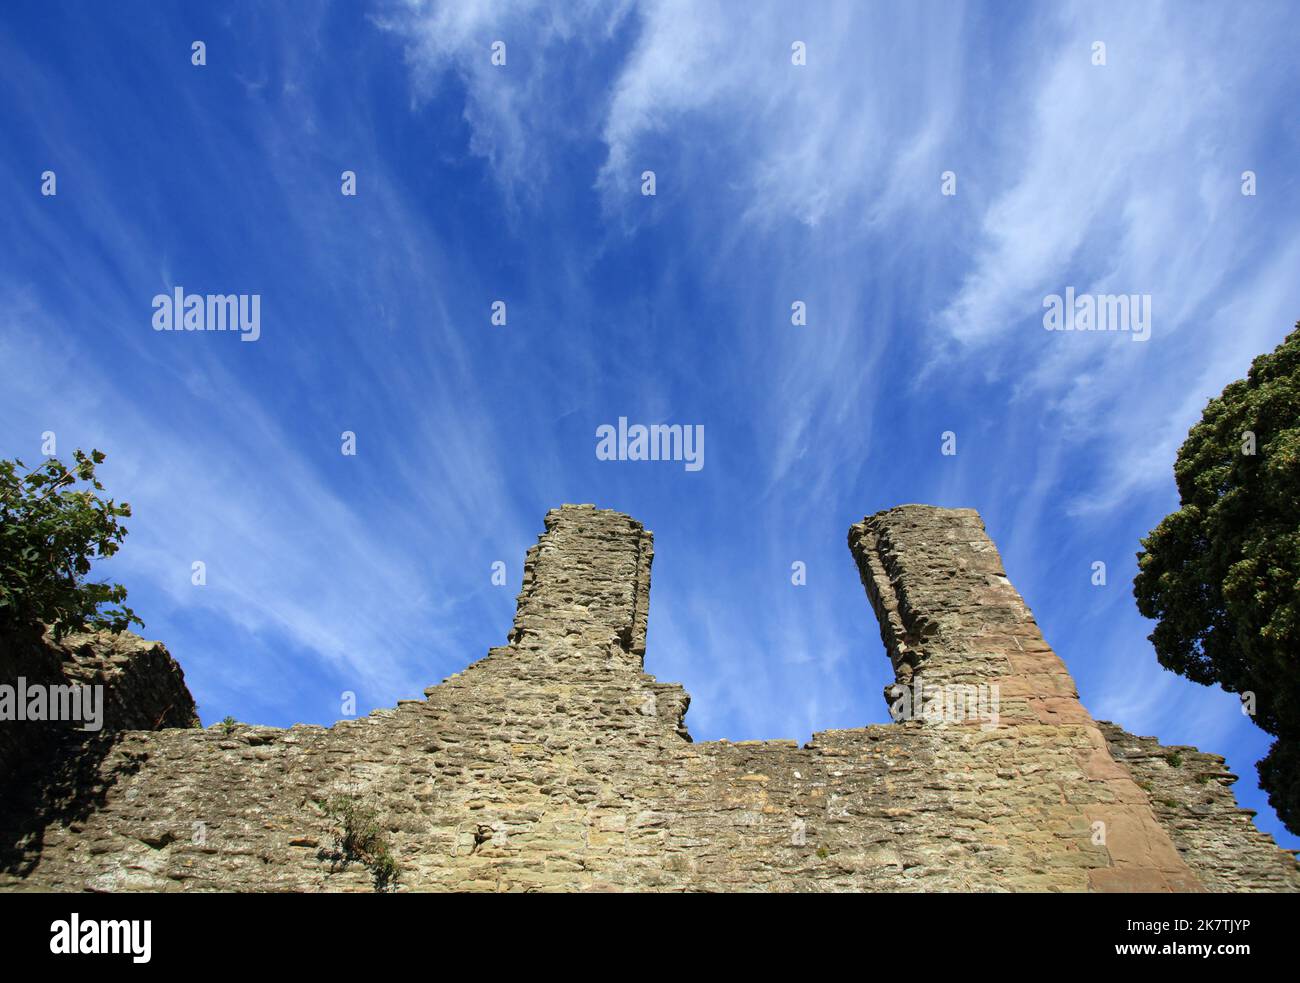 Ludlow castle walls, Ludlow, Shropshire, England, UK. Stock Photo